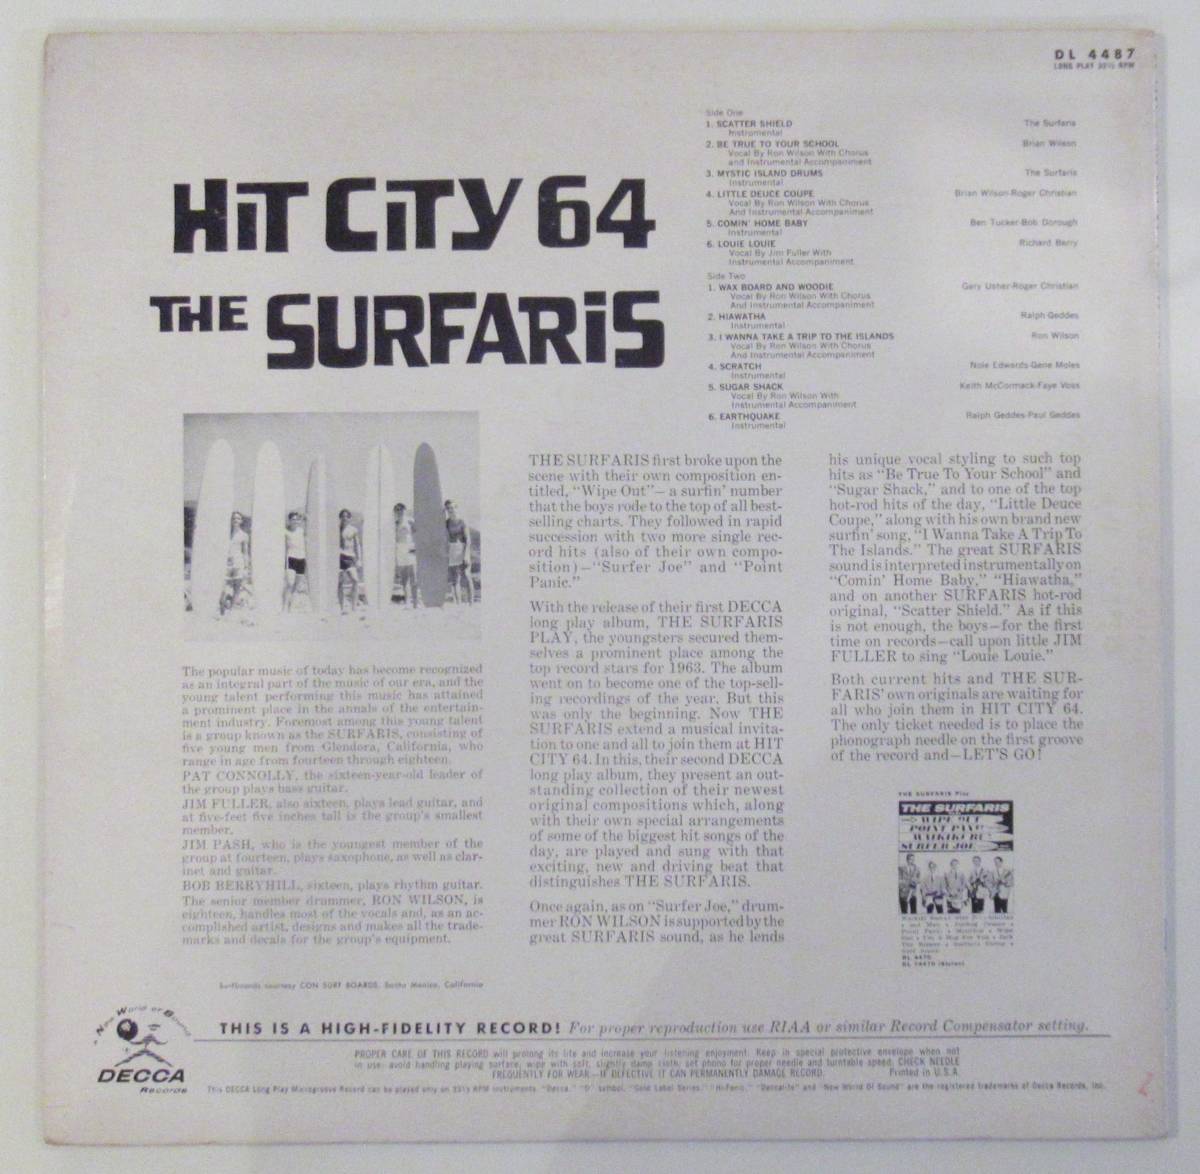  запись (LP) The * Safari -z(THE SURFARIS)HIT CITY